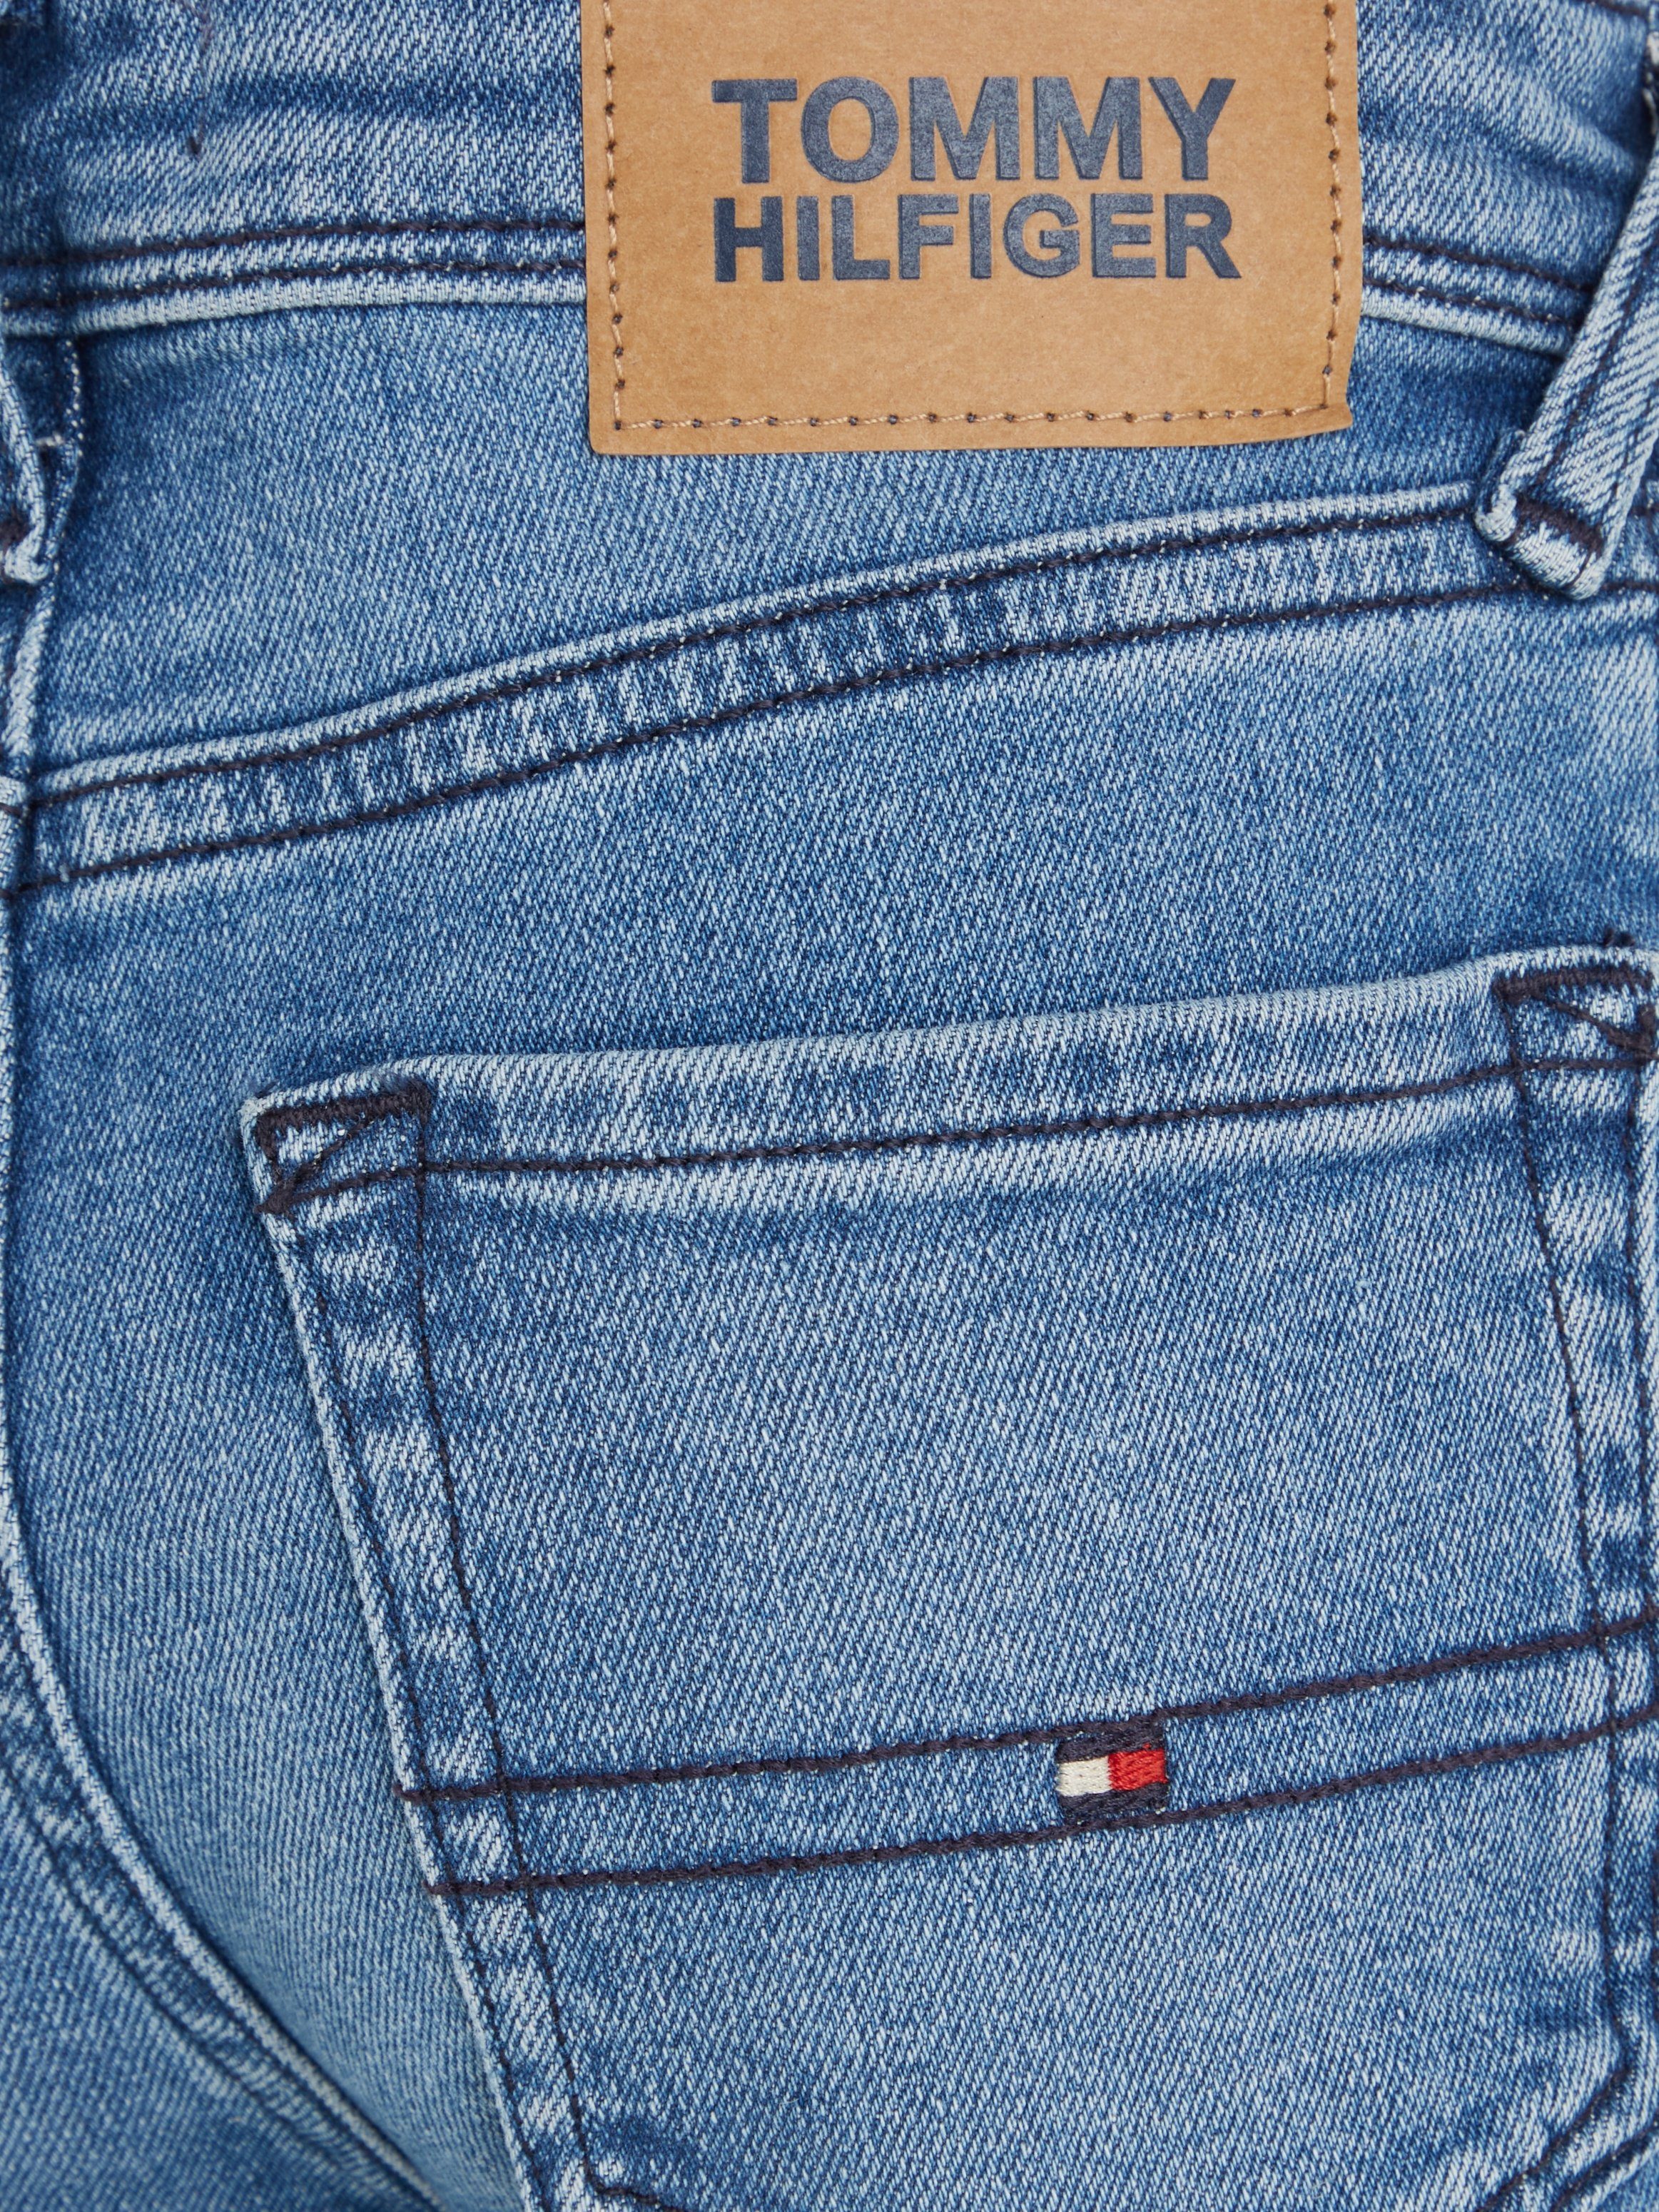 BLUE mit Hilfiger Stretch-Jeans Tommy Leder-Badge MID Y SCANTON